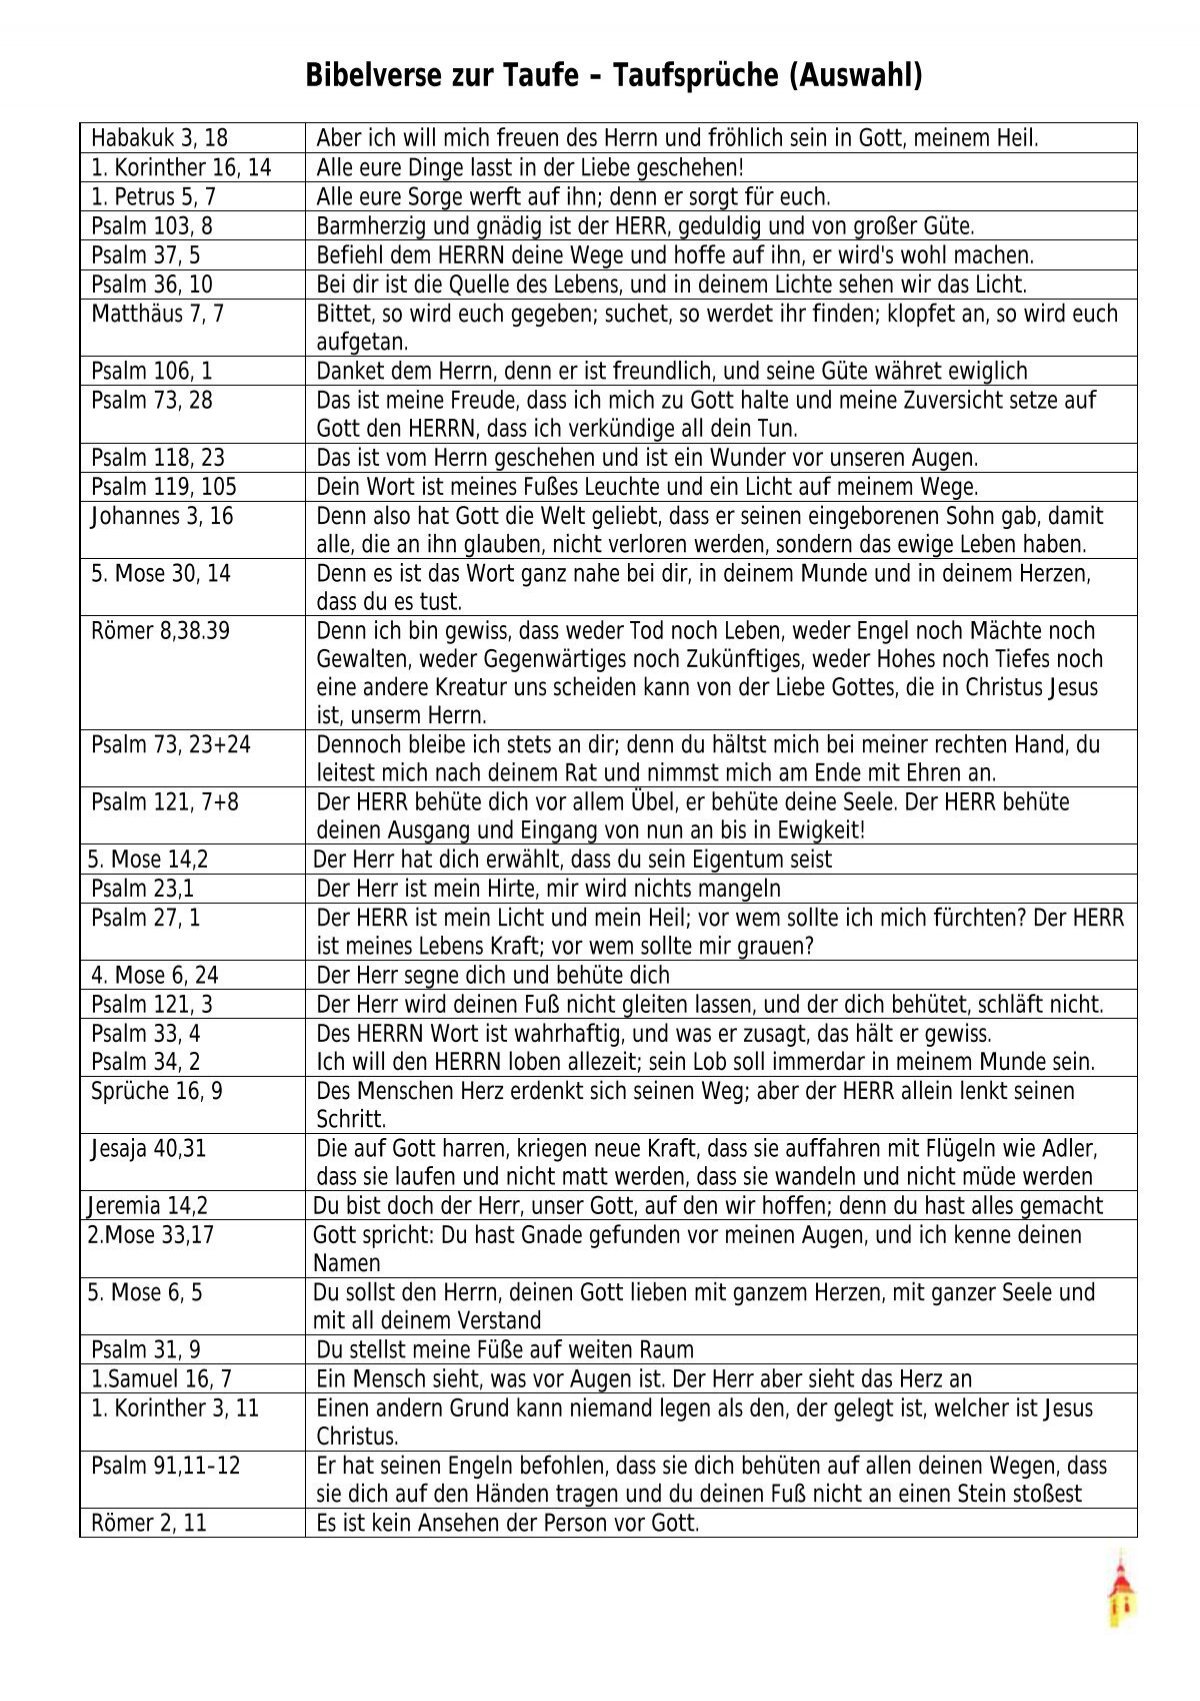 Bibelverse Zur Taufe Taufspruche Auswahl